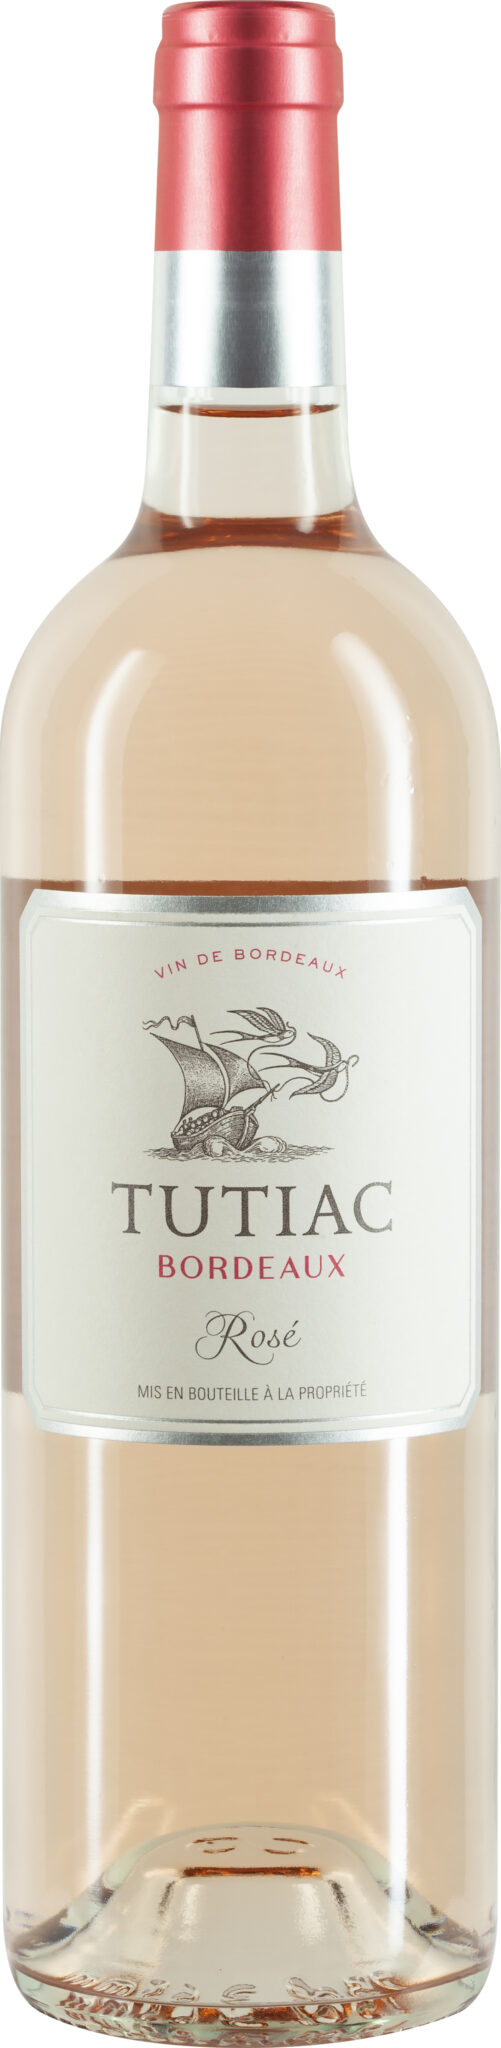 Tutiac Bordeaux Rosé bei der-schmeckt-mir bestellen